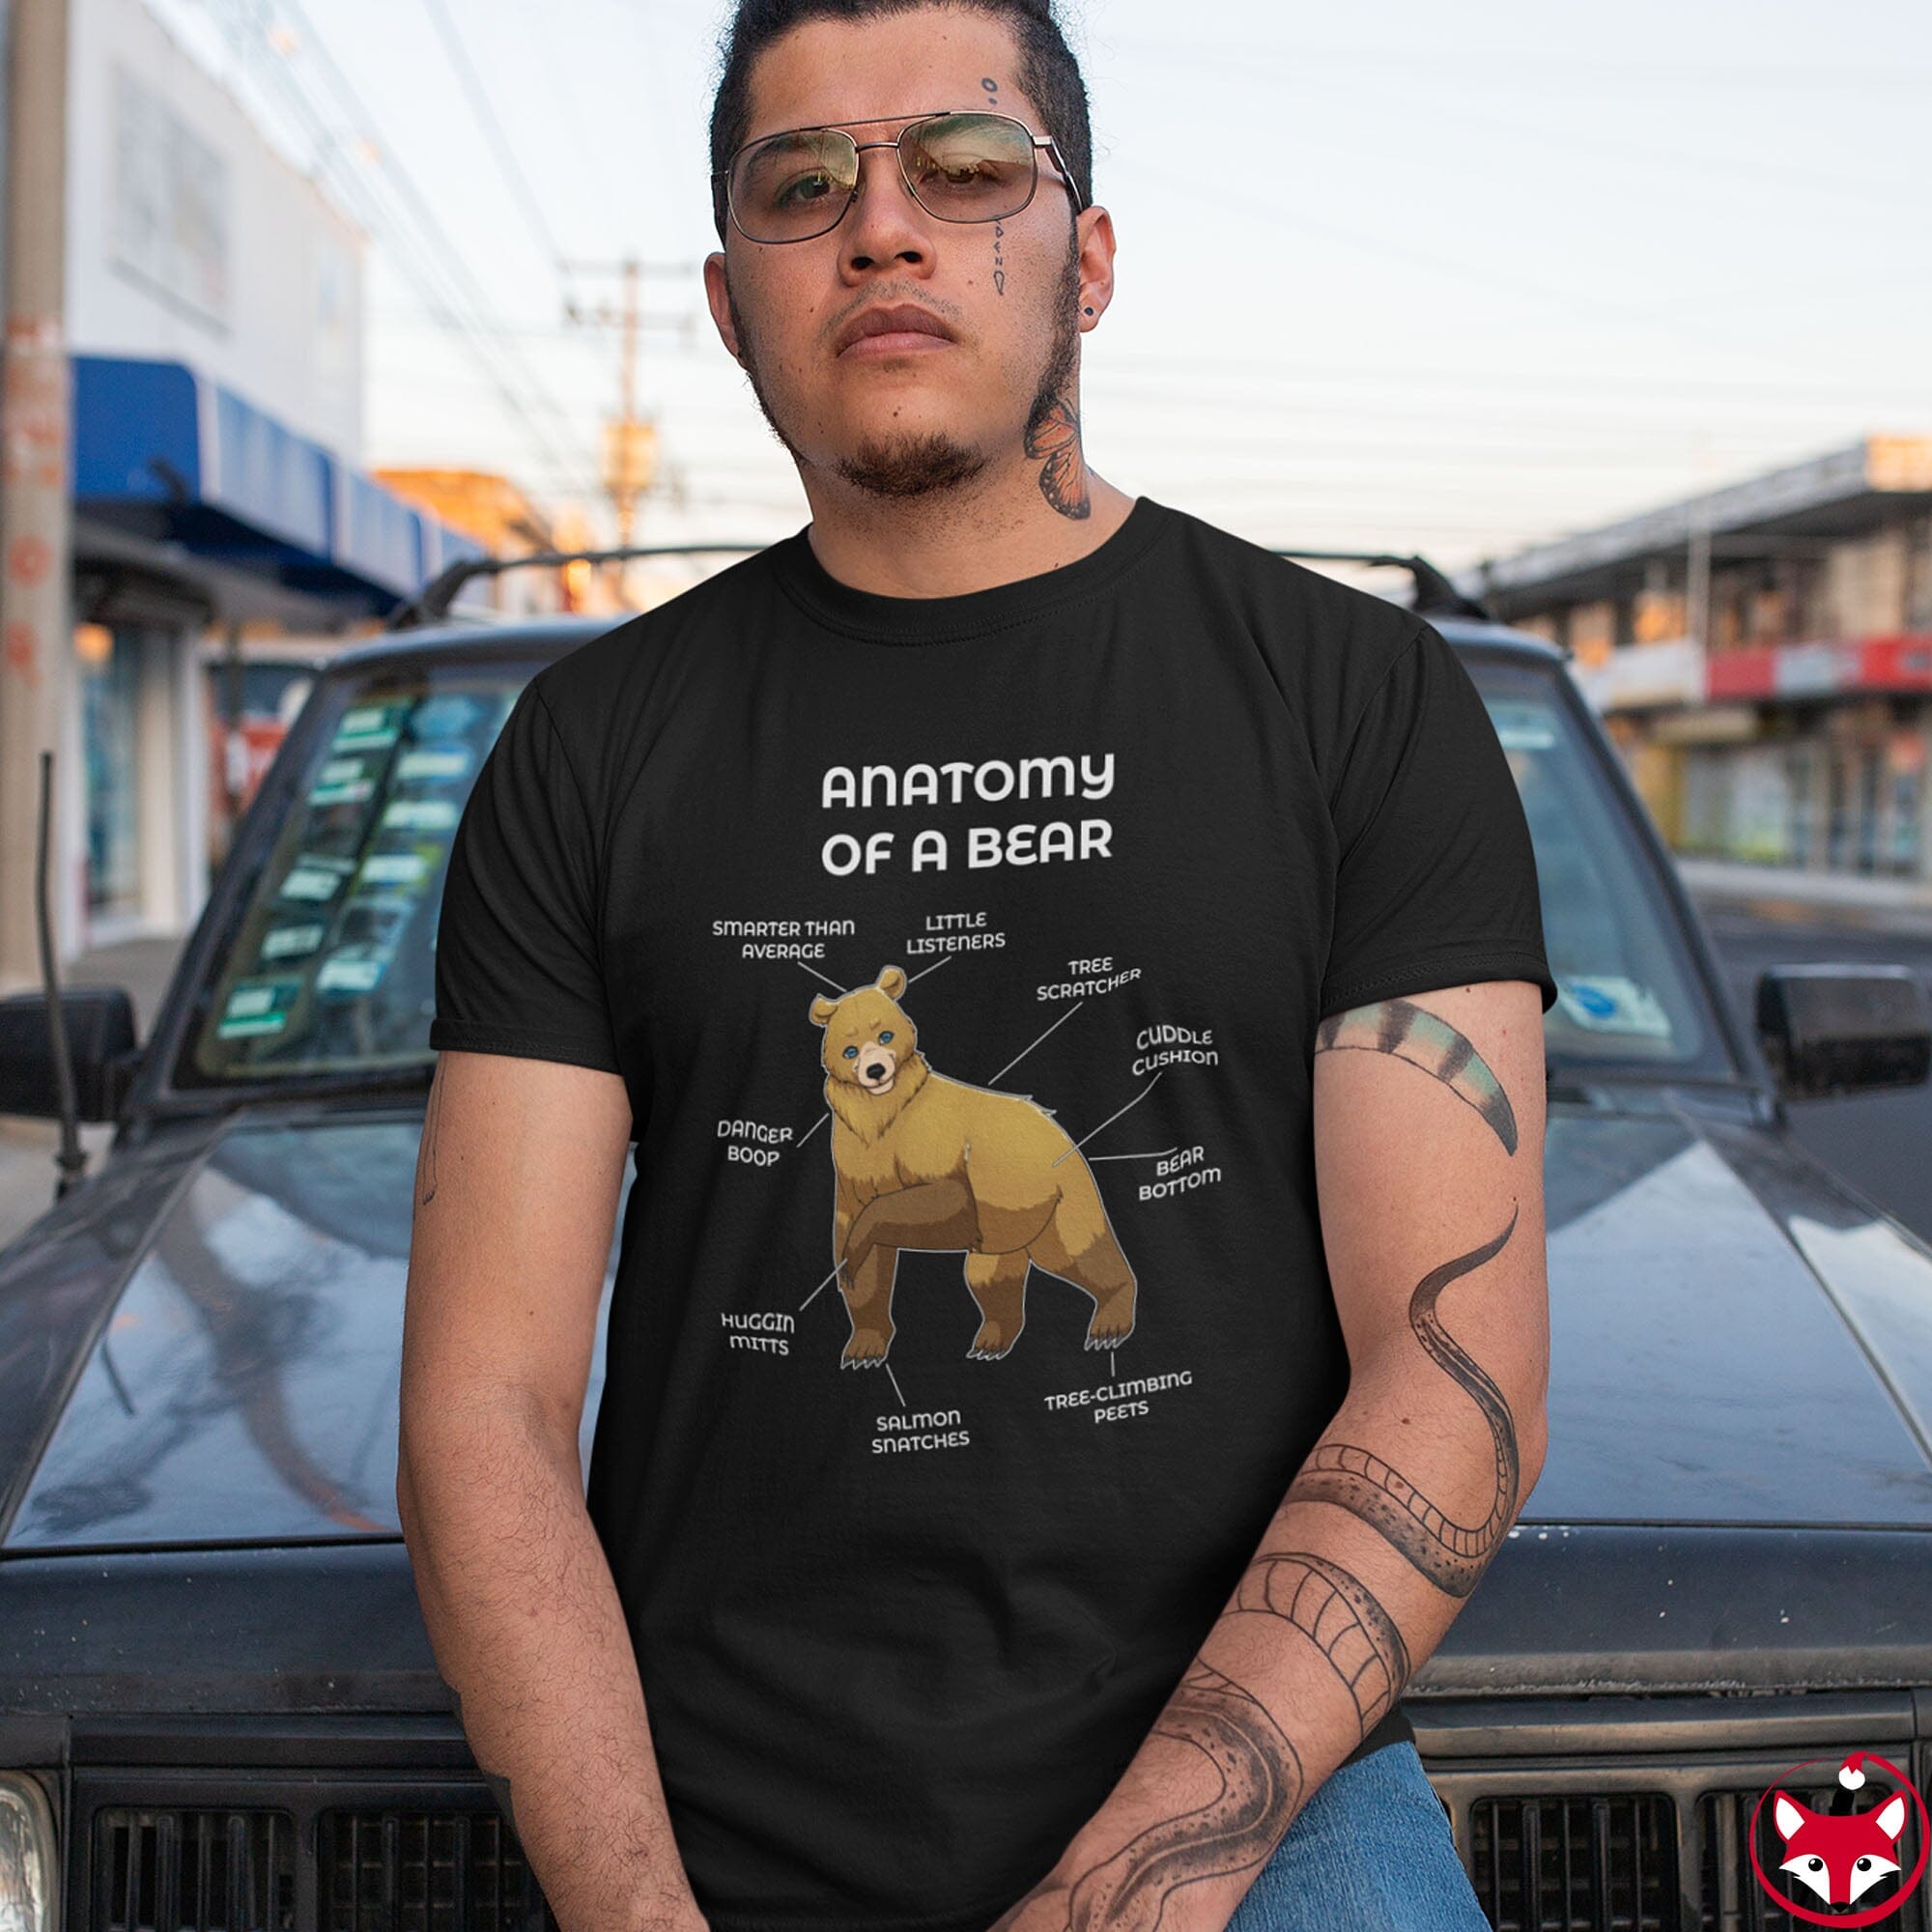 Bear Yellow - T-Shirt T-Shirt Artworktee 